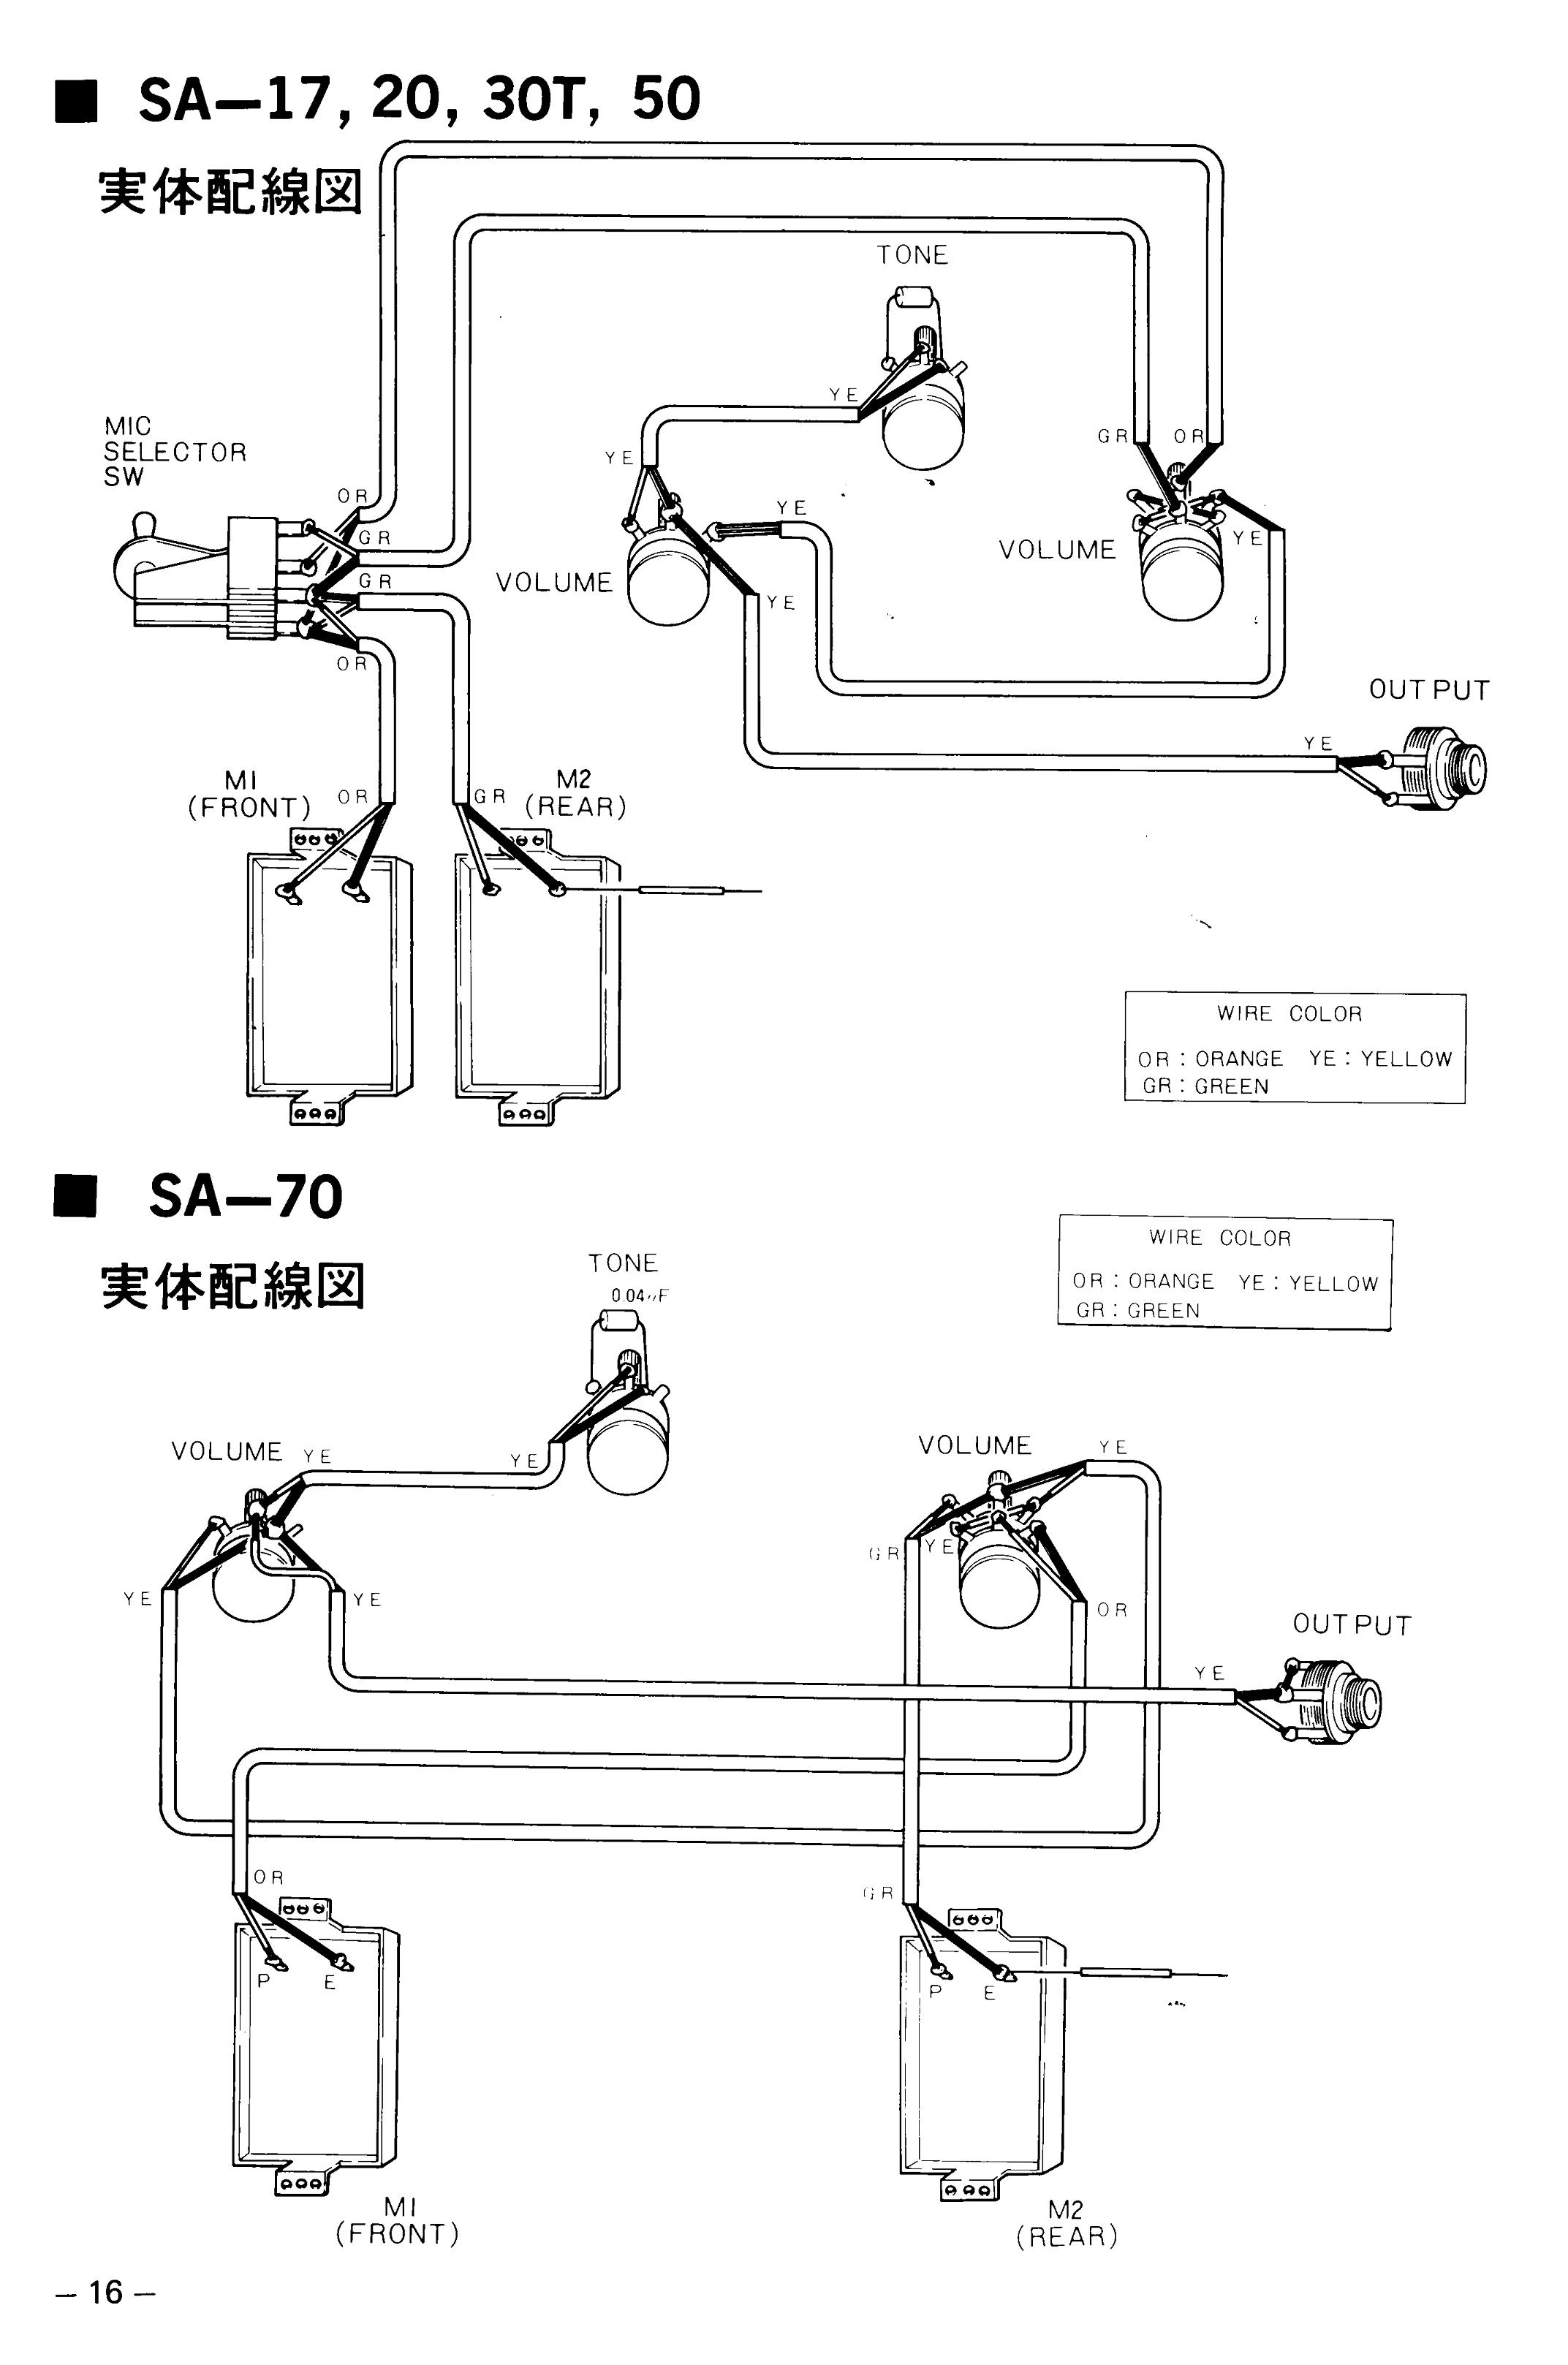 Yamaha SA-20, SA-30, SA-50, SA-70 Wiring diagram (Page 16 of 1979 parts brochure)